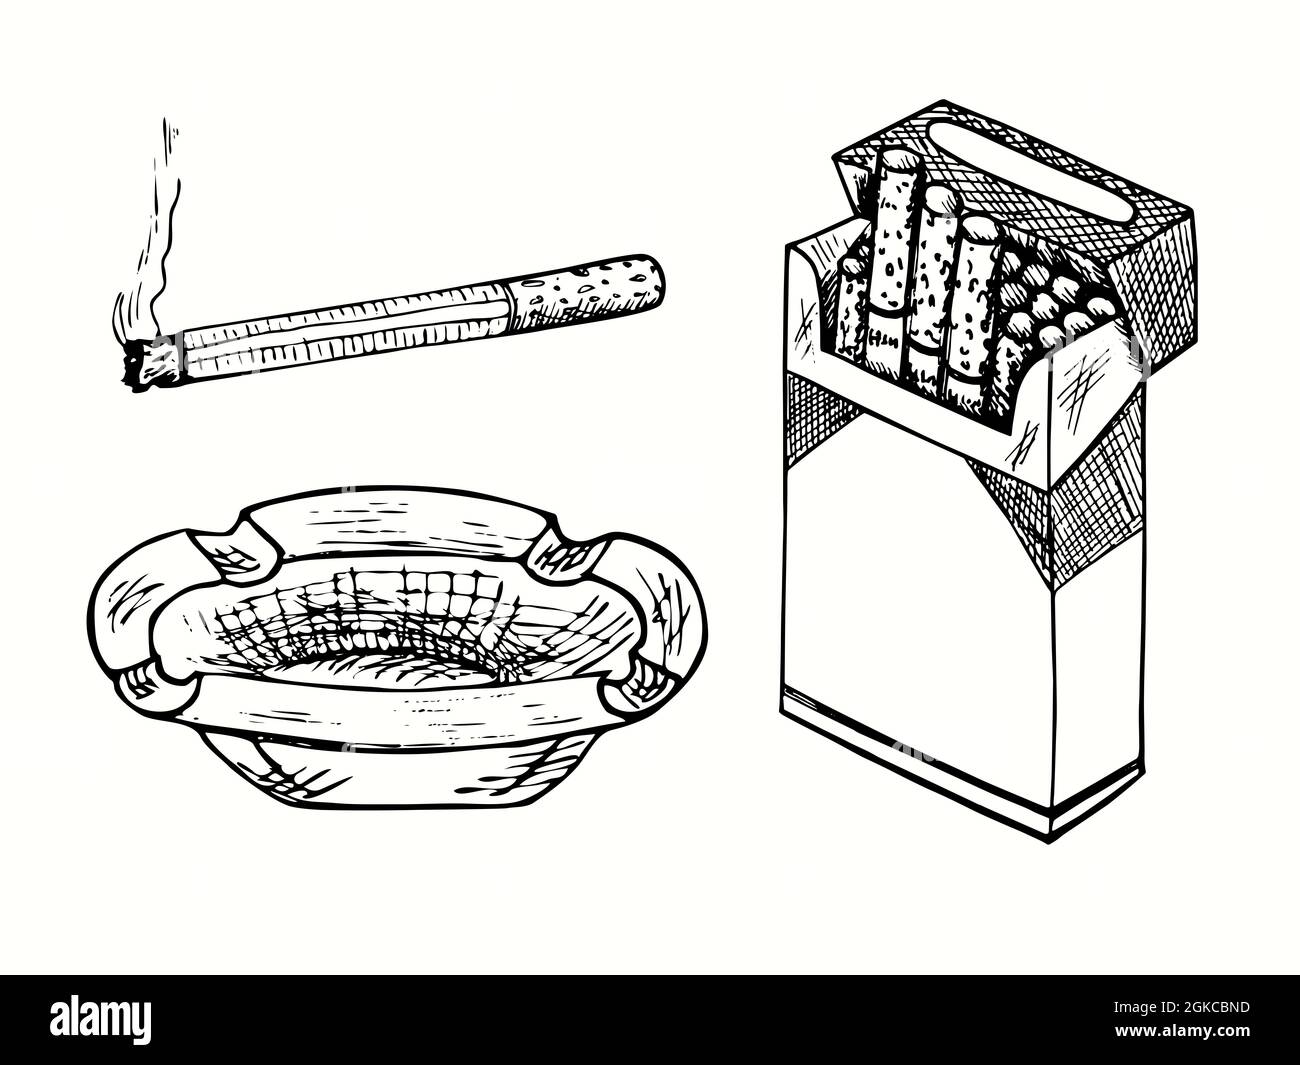 Cendrier tiré à la main, cigarette avec lignes de fumée, paquet de cigarettes ouvert. Illustration de dessin noir et blanc Banque D'Images